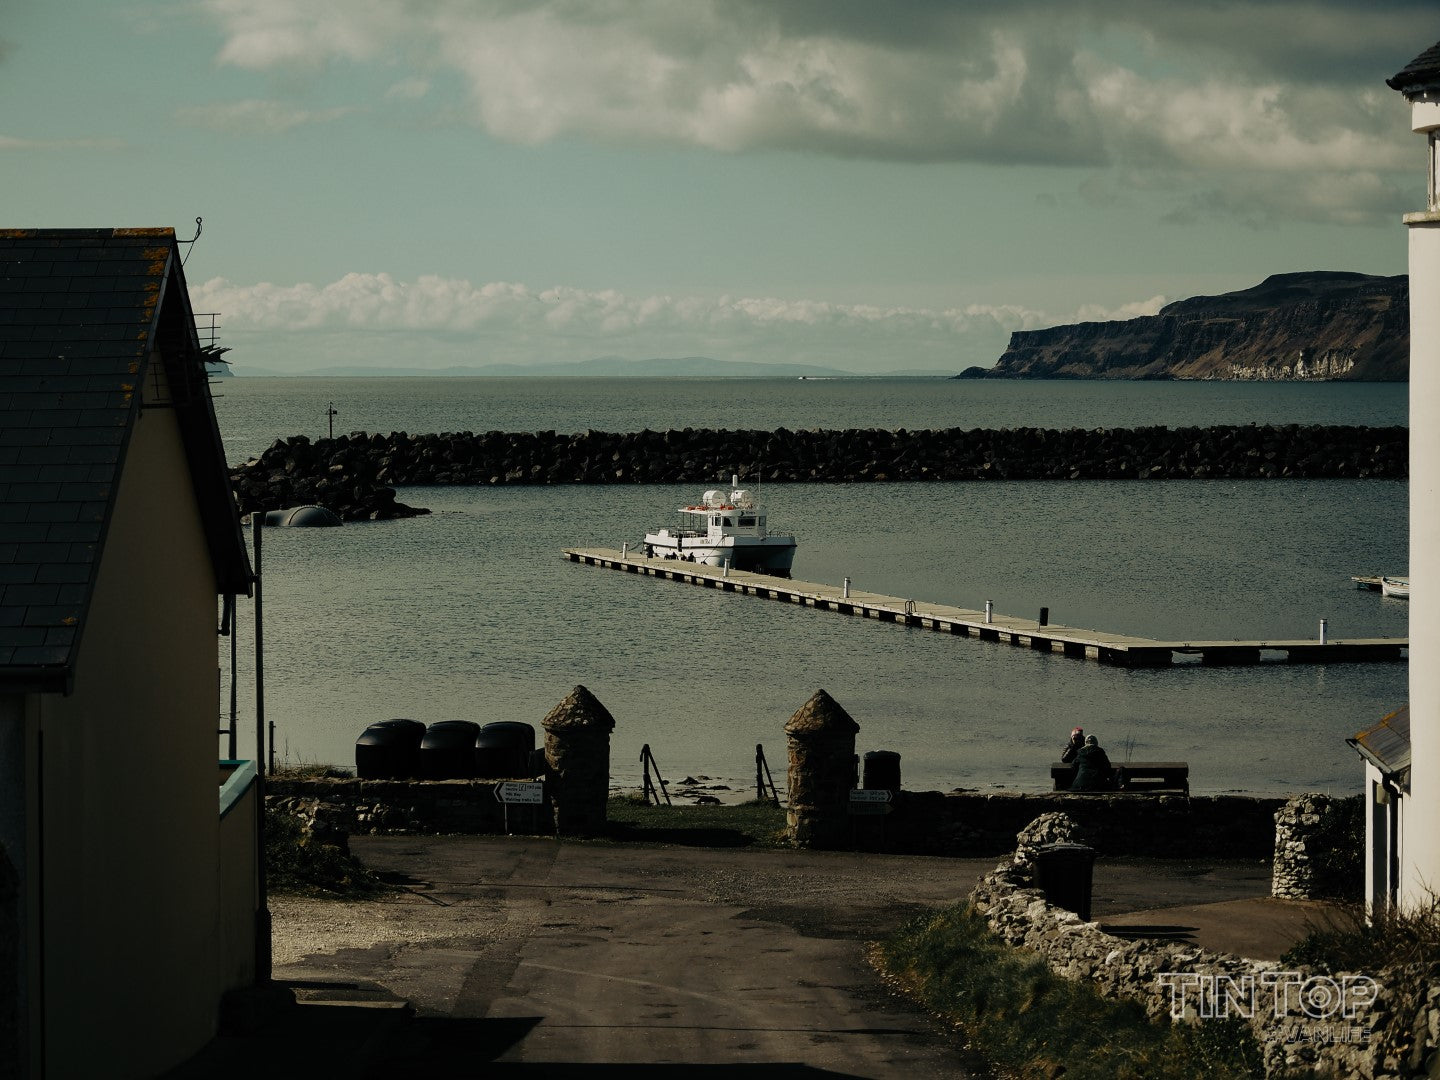 The ferry on Rathlin Island